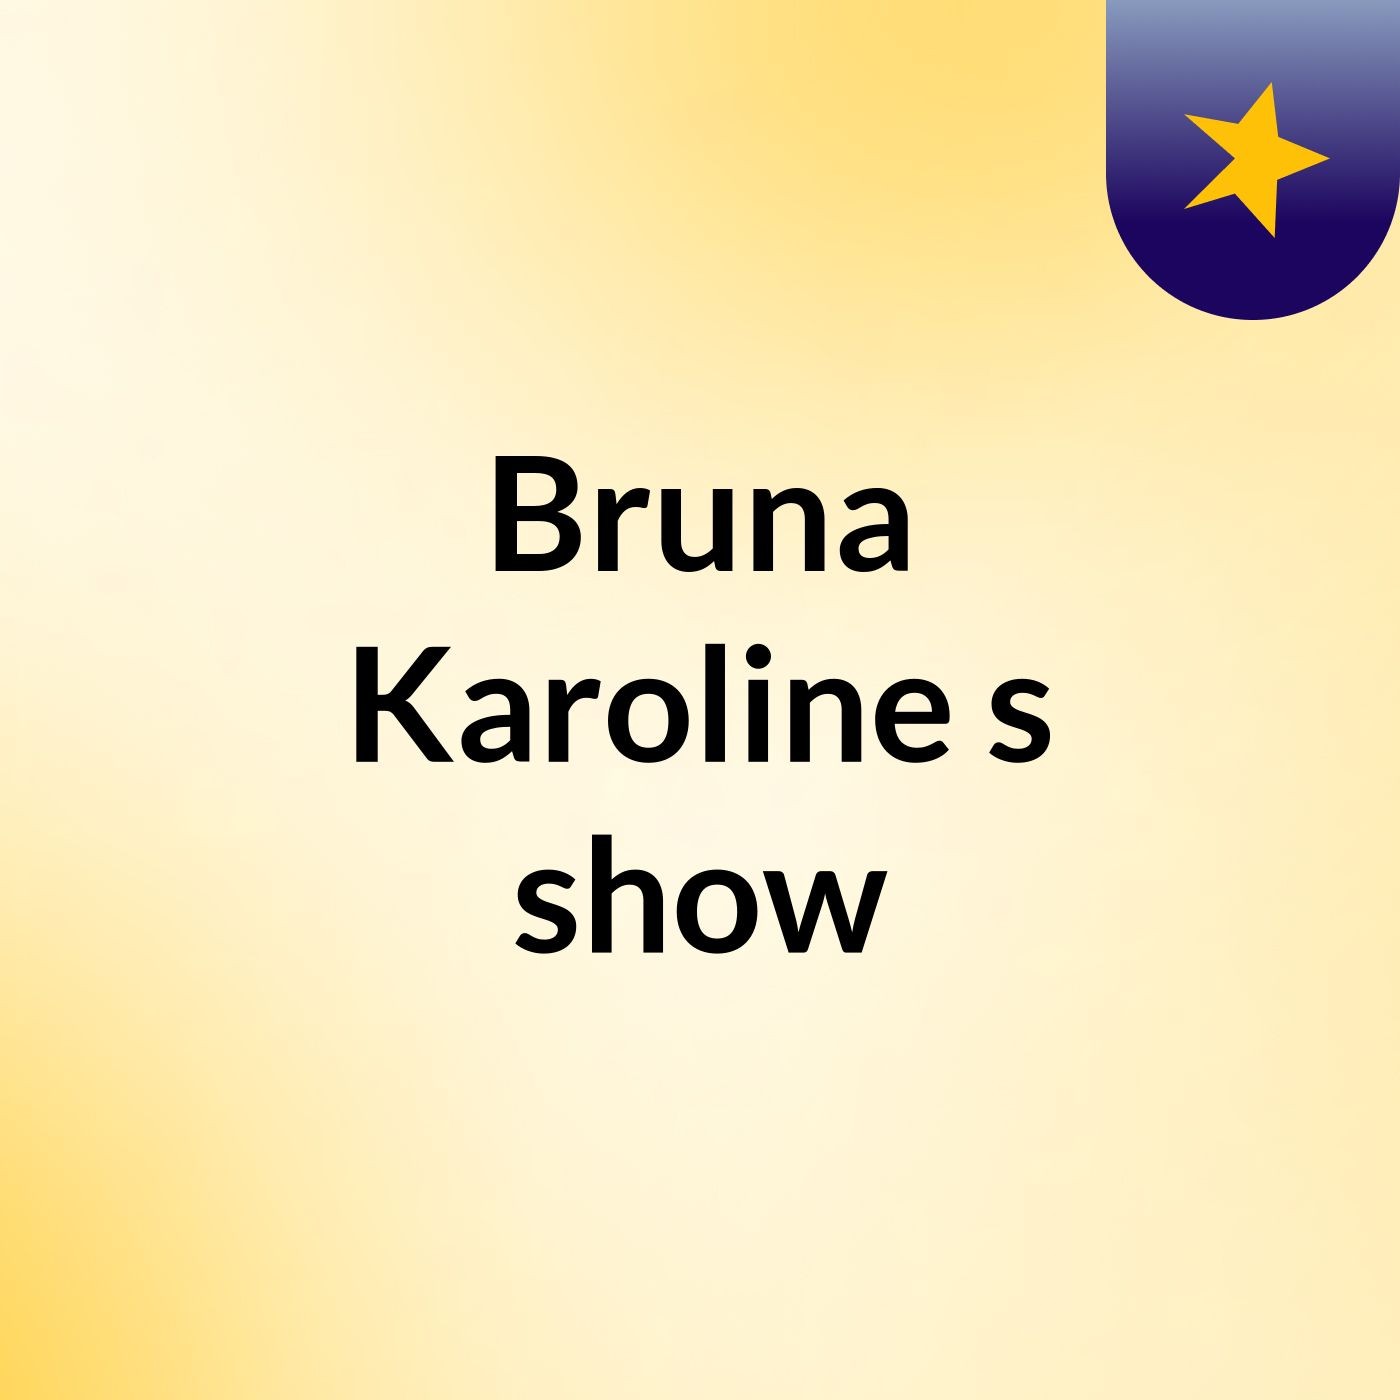 Bruna Karoline's show